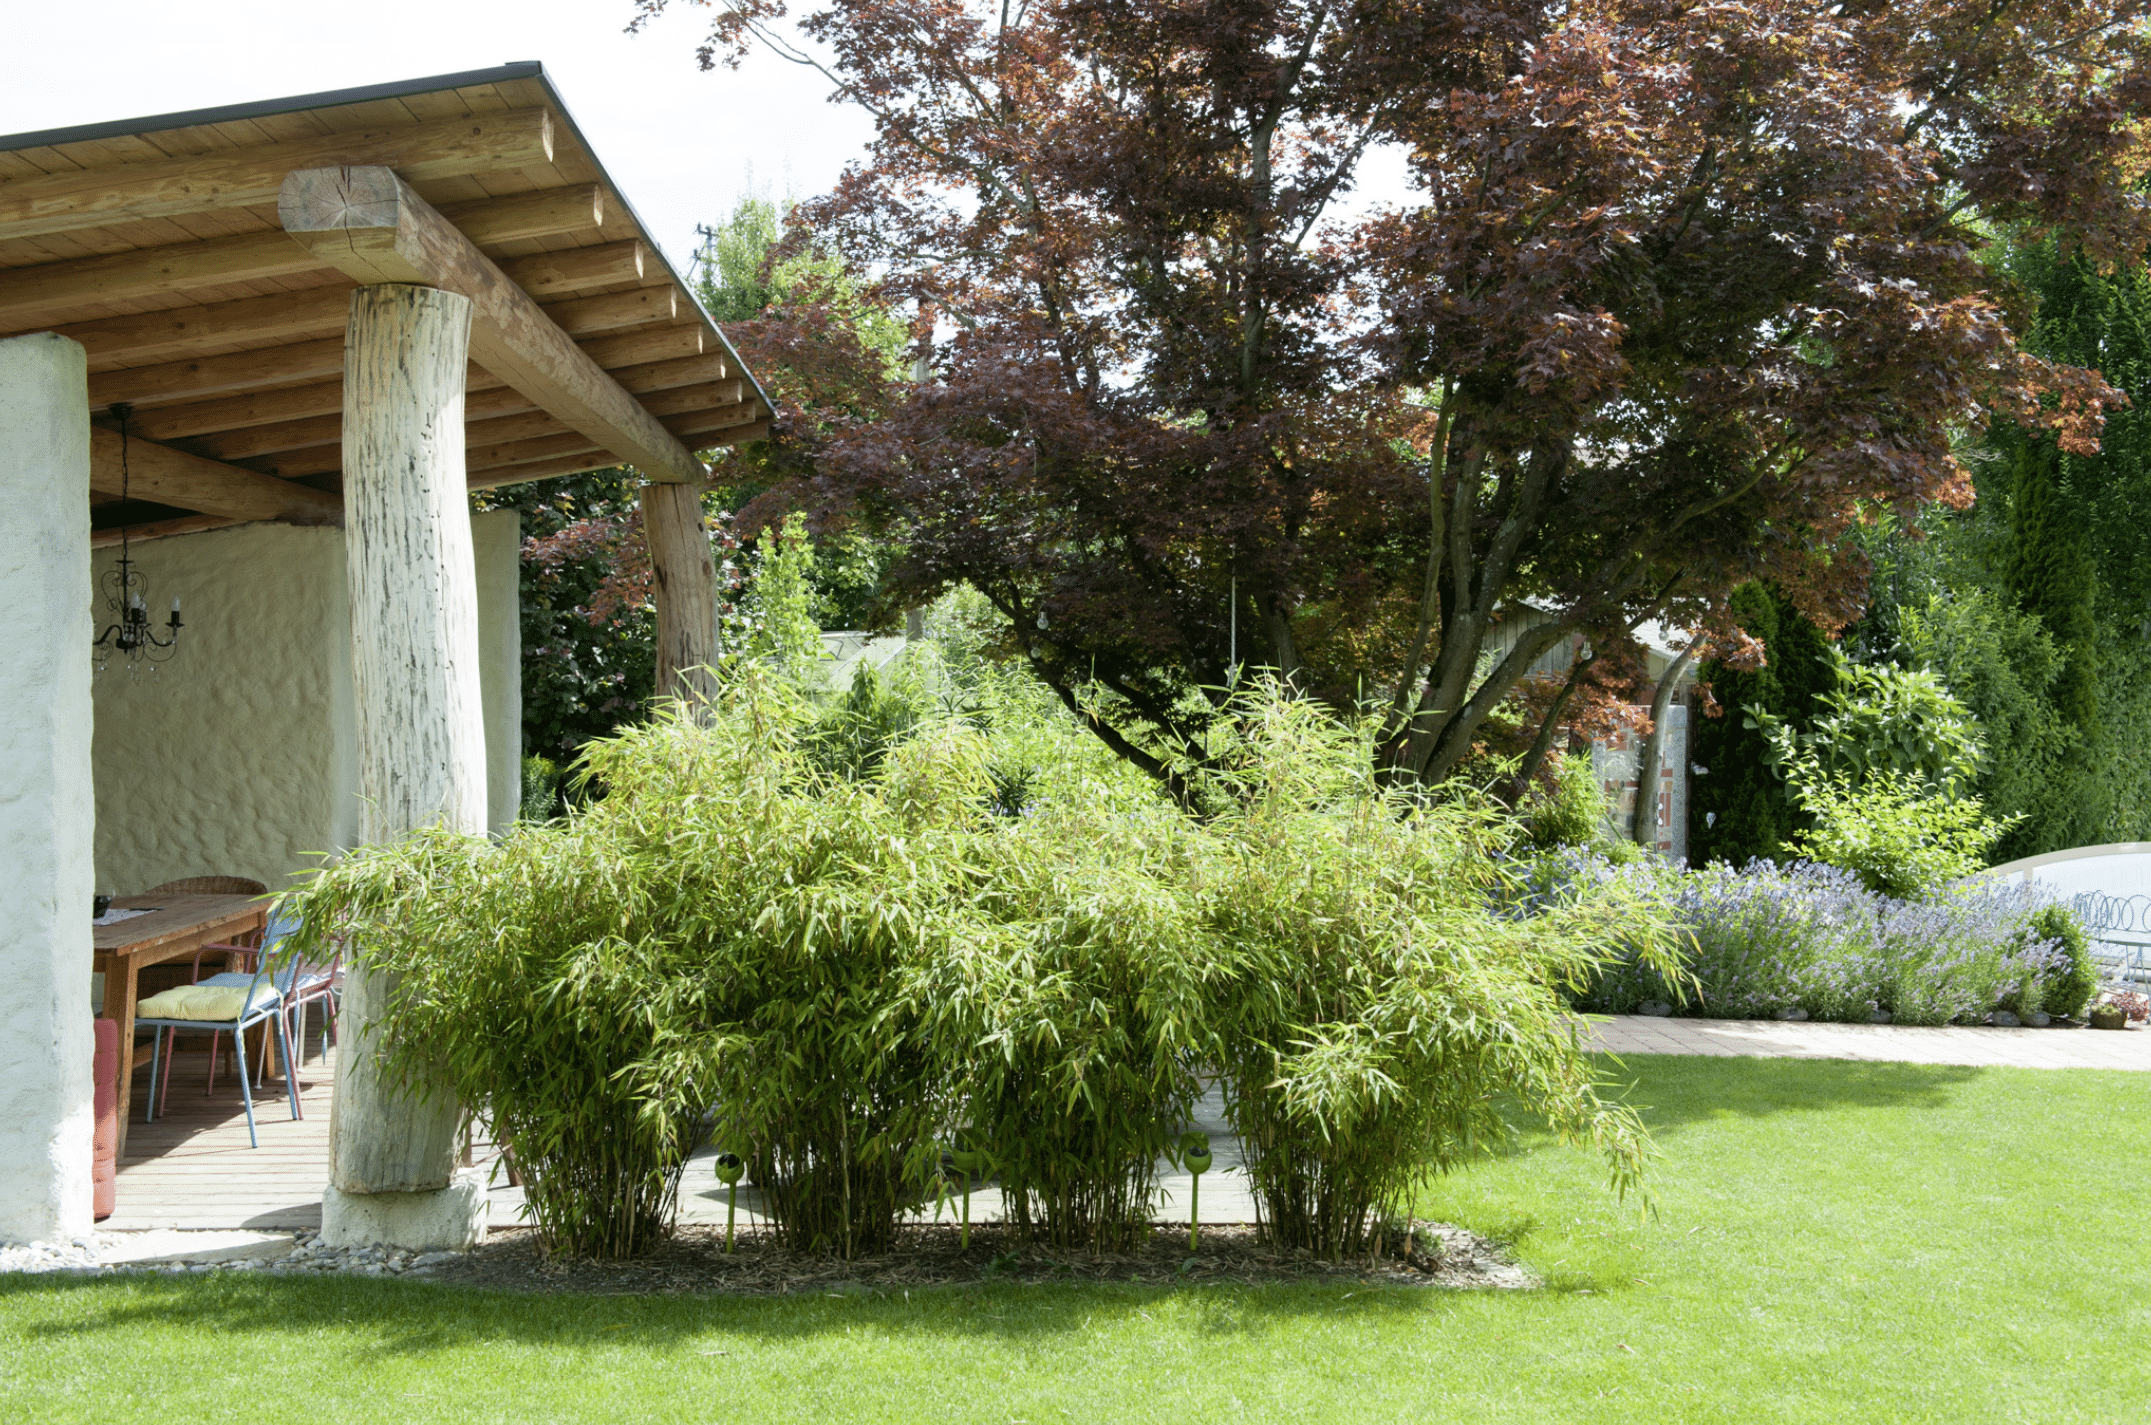 Gartenbau Schmid zeigt einen Garten mit überdachter Terrasse, einen großen Baum mit roten Blättern und dicht wachsender Staude.